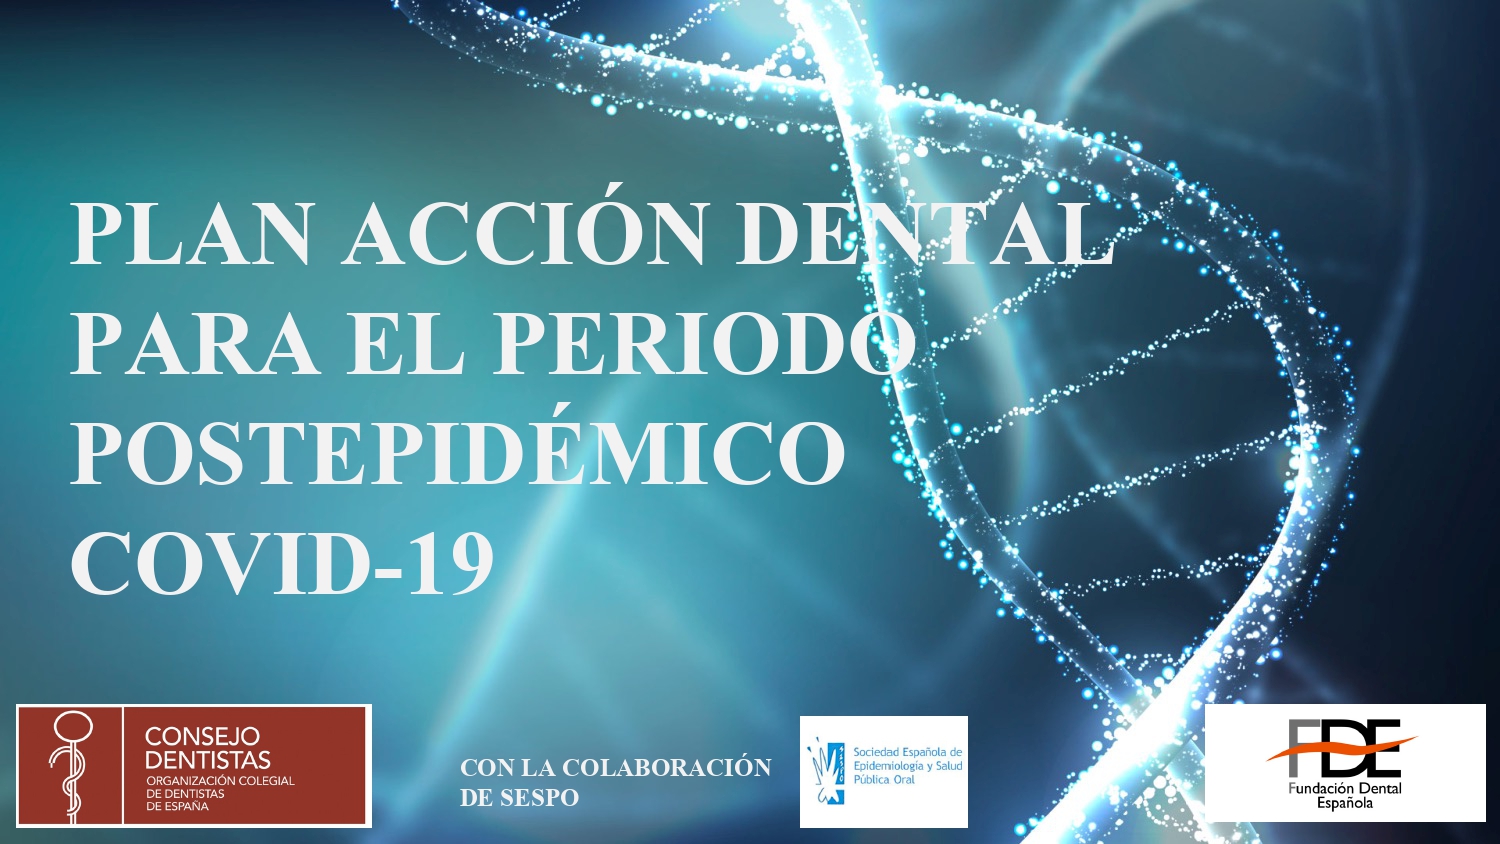 El Consejo General de Dentistas y la FDE amplían el plazo del curso “Plan de acción dental para el periodo postepidémico Covid-19